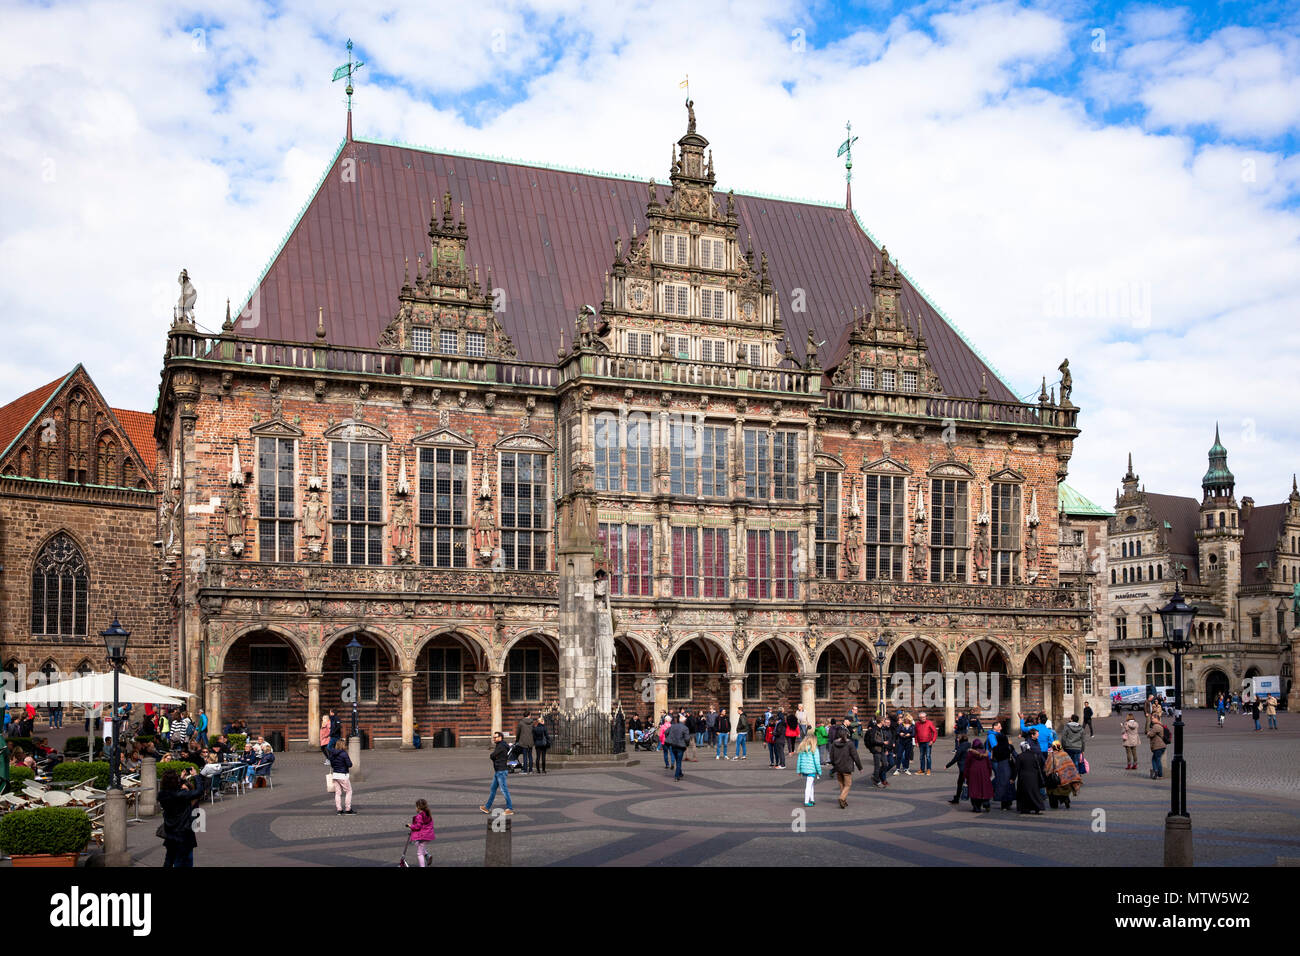 city hall at the market place, Bremen, Germany.  Rathaus am Marktplatz, Bremen, Deutschland. Stock Photo